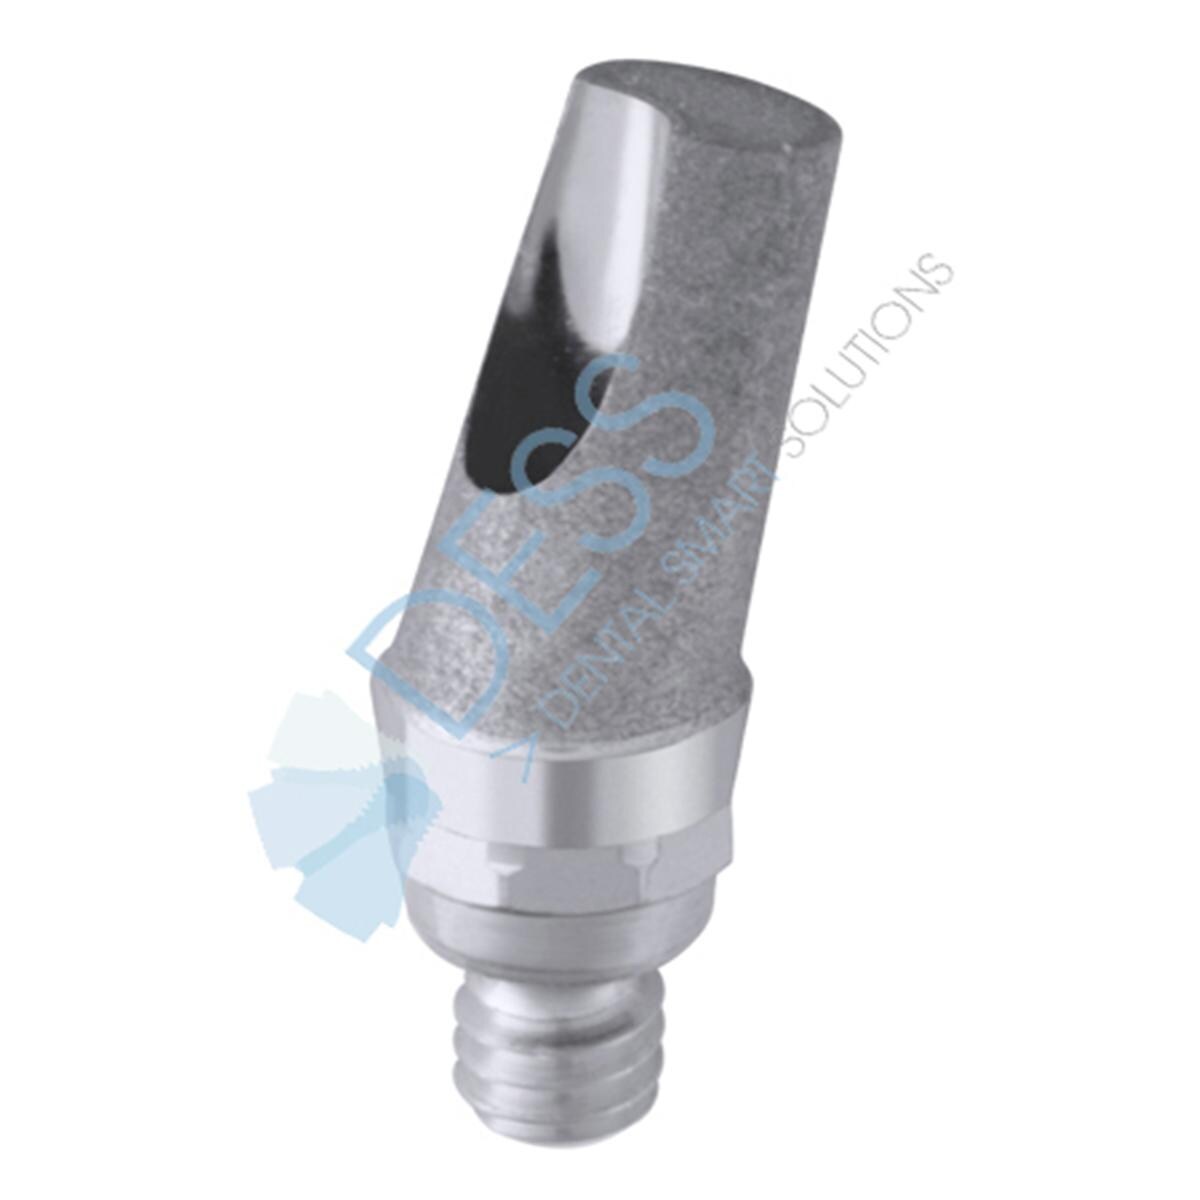 Titanabutment - kompatibel mit Straumann® - RN Ø 4,8 mm, 15° gewinkelt